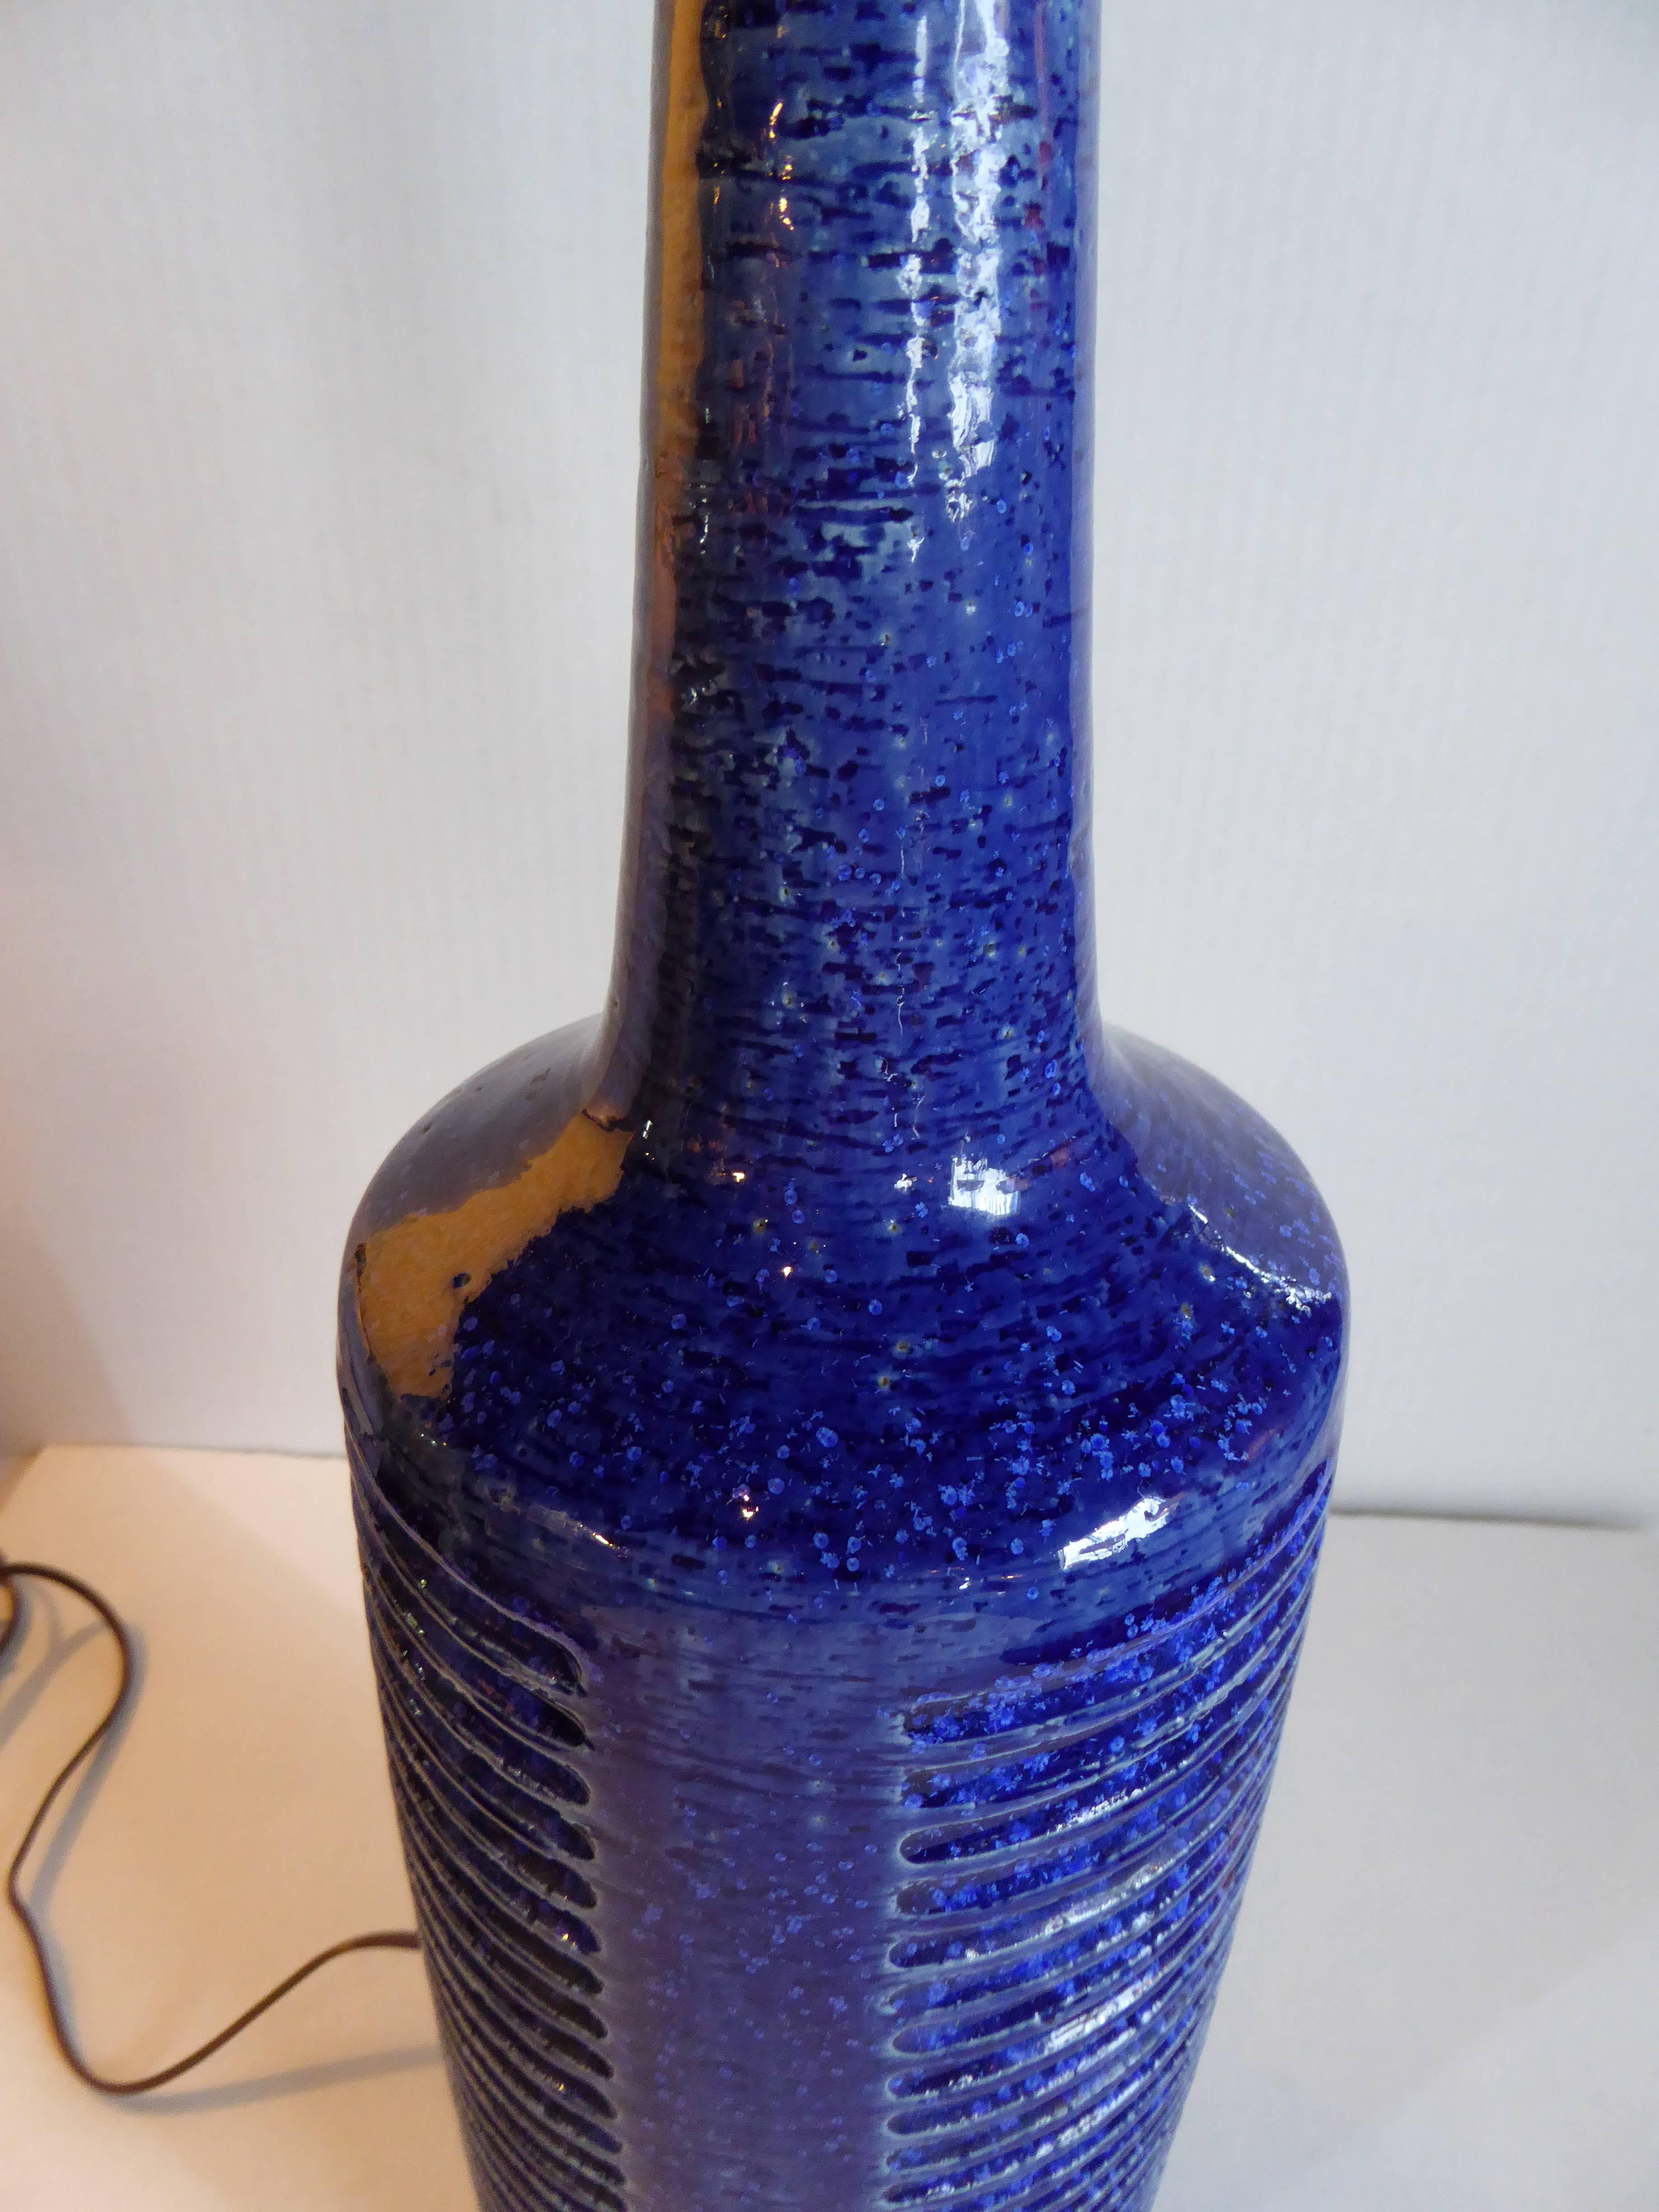 Palshus Blue Glaze Chamotte Pottery Lamp by Per Linnemann Schmidt 2